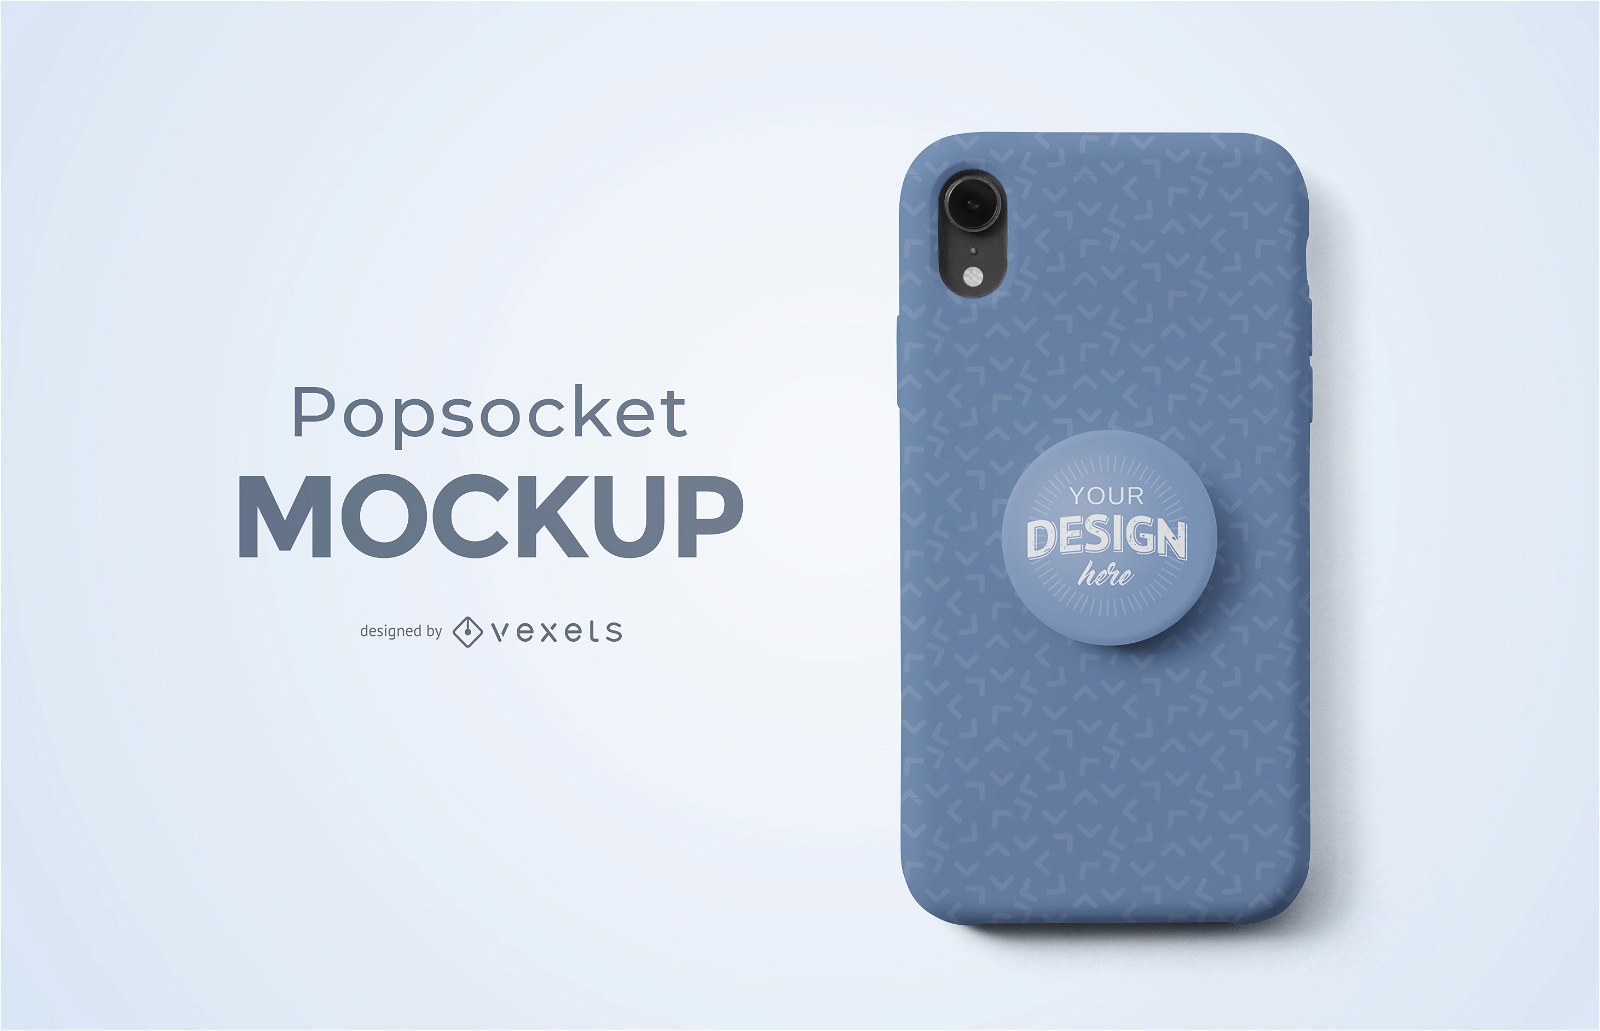 Popsocket Phone Mockup - PSD Mockup Download